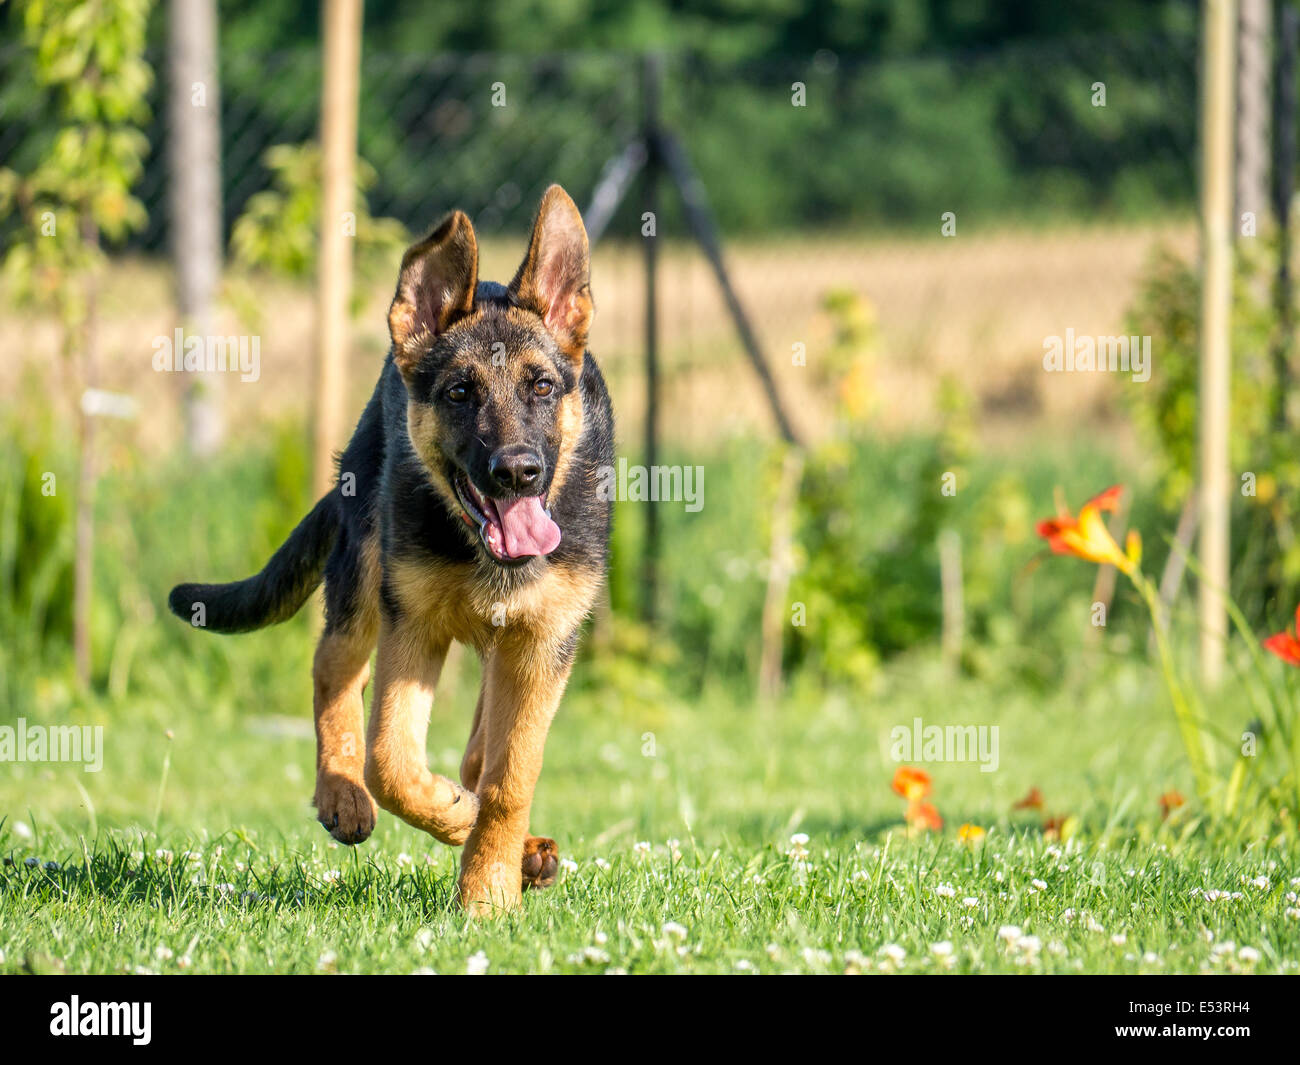 Heureux chiot berger allemand courir vers l'appareil photo Banque D'Images